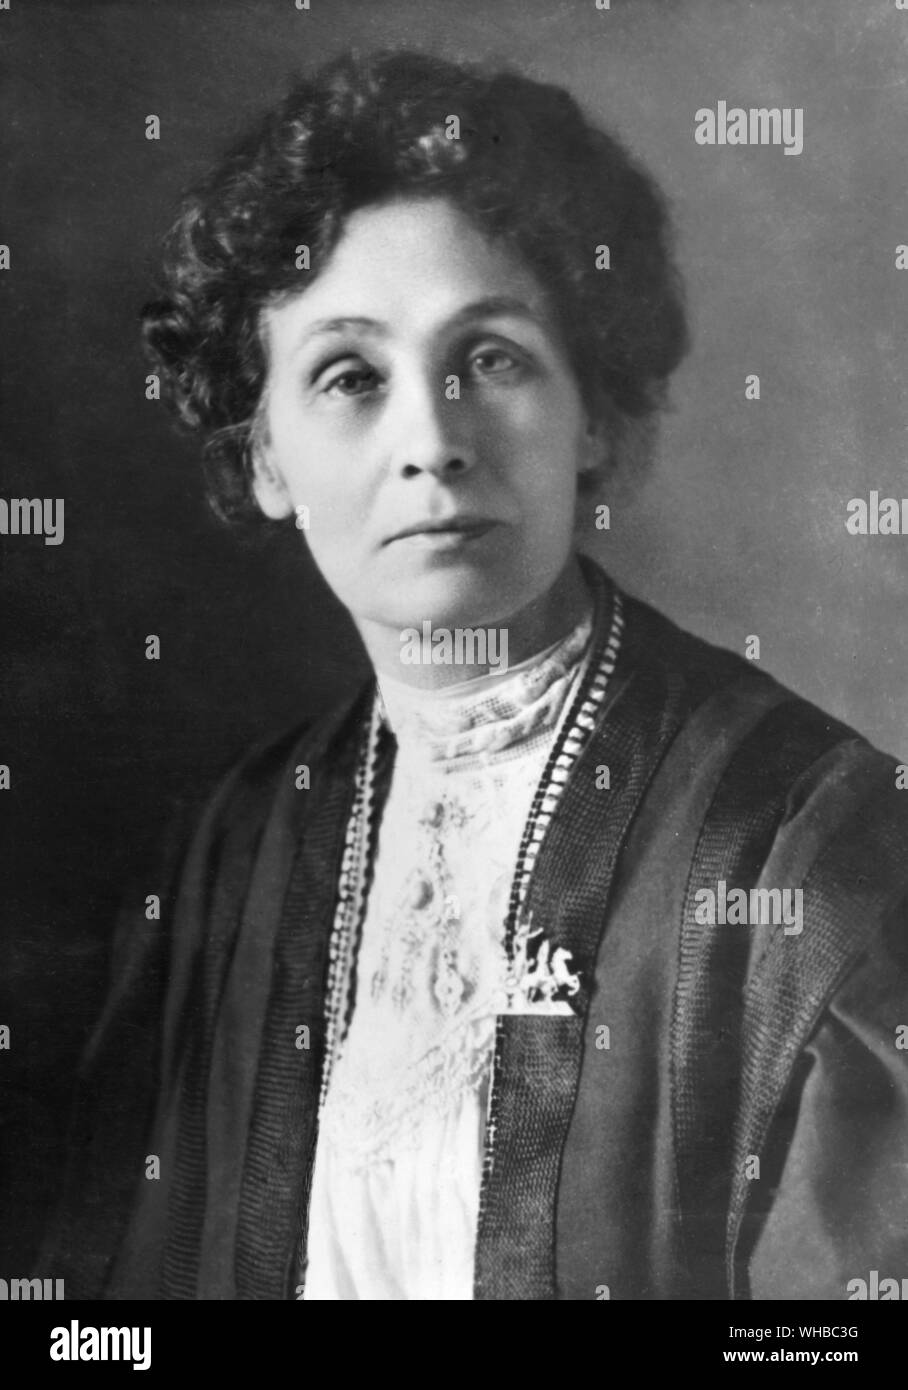 Emmeline Pankhurst (14. Juli 1858 - 14. Juni 1928) war einer der Gründer der britischen Suffragettenbewegung. (Sozialen und Politischen Der wspu Frauen union) ist der Name der Frau Pankhurst, mehr als alle anderen, die mit dem Kampf für die enfranchisement der Frauen im Vereinigten Königreich unmittelbar vor dem Ersten Weltkrieg verbunden ist. Stockfoto